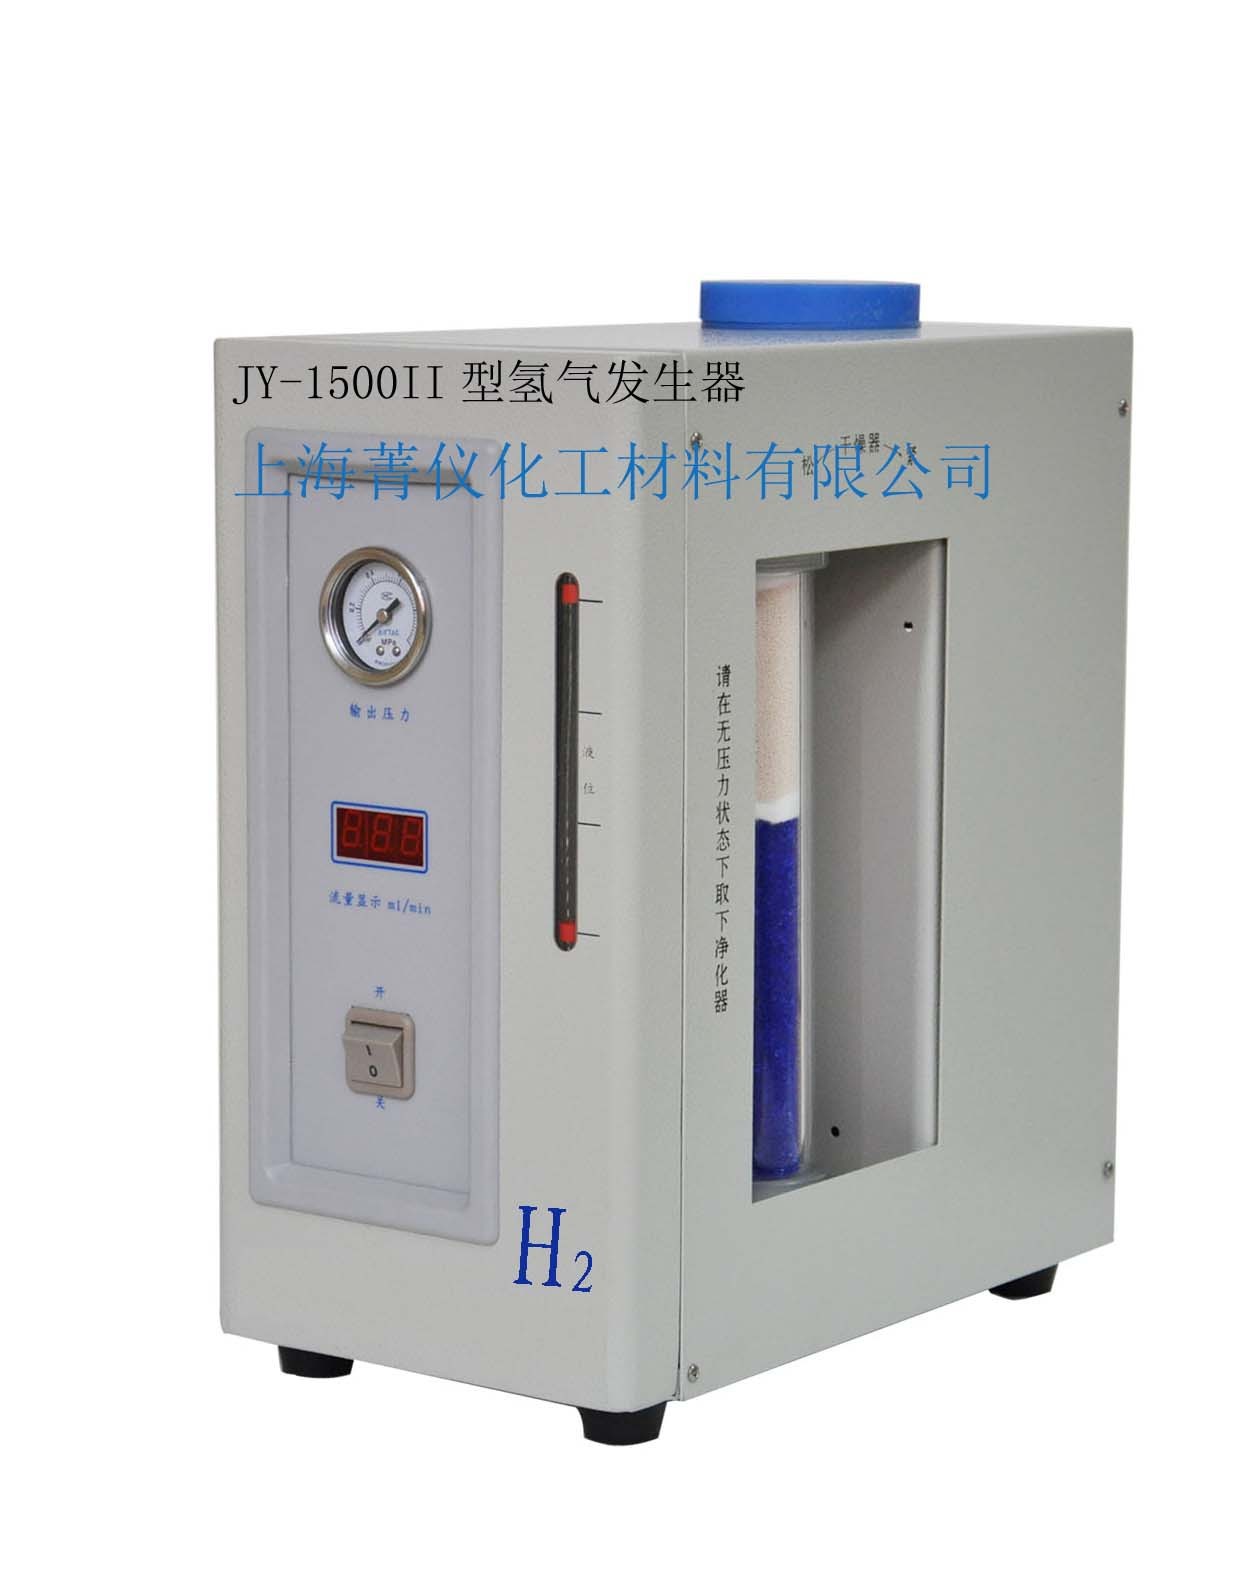 JY-1500II 型 氢气发生器